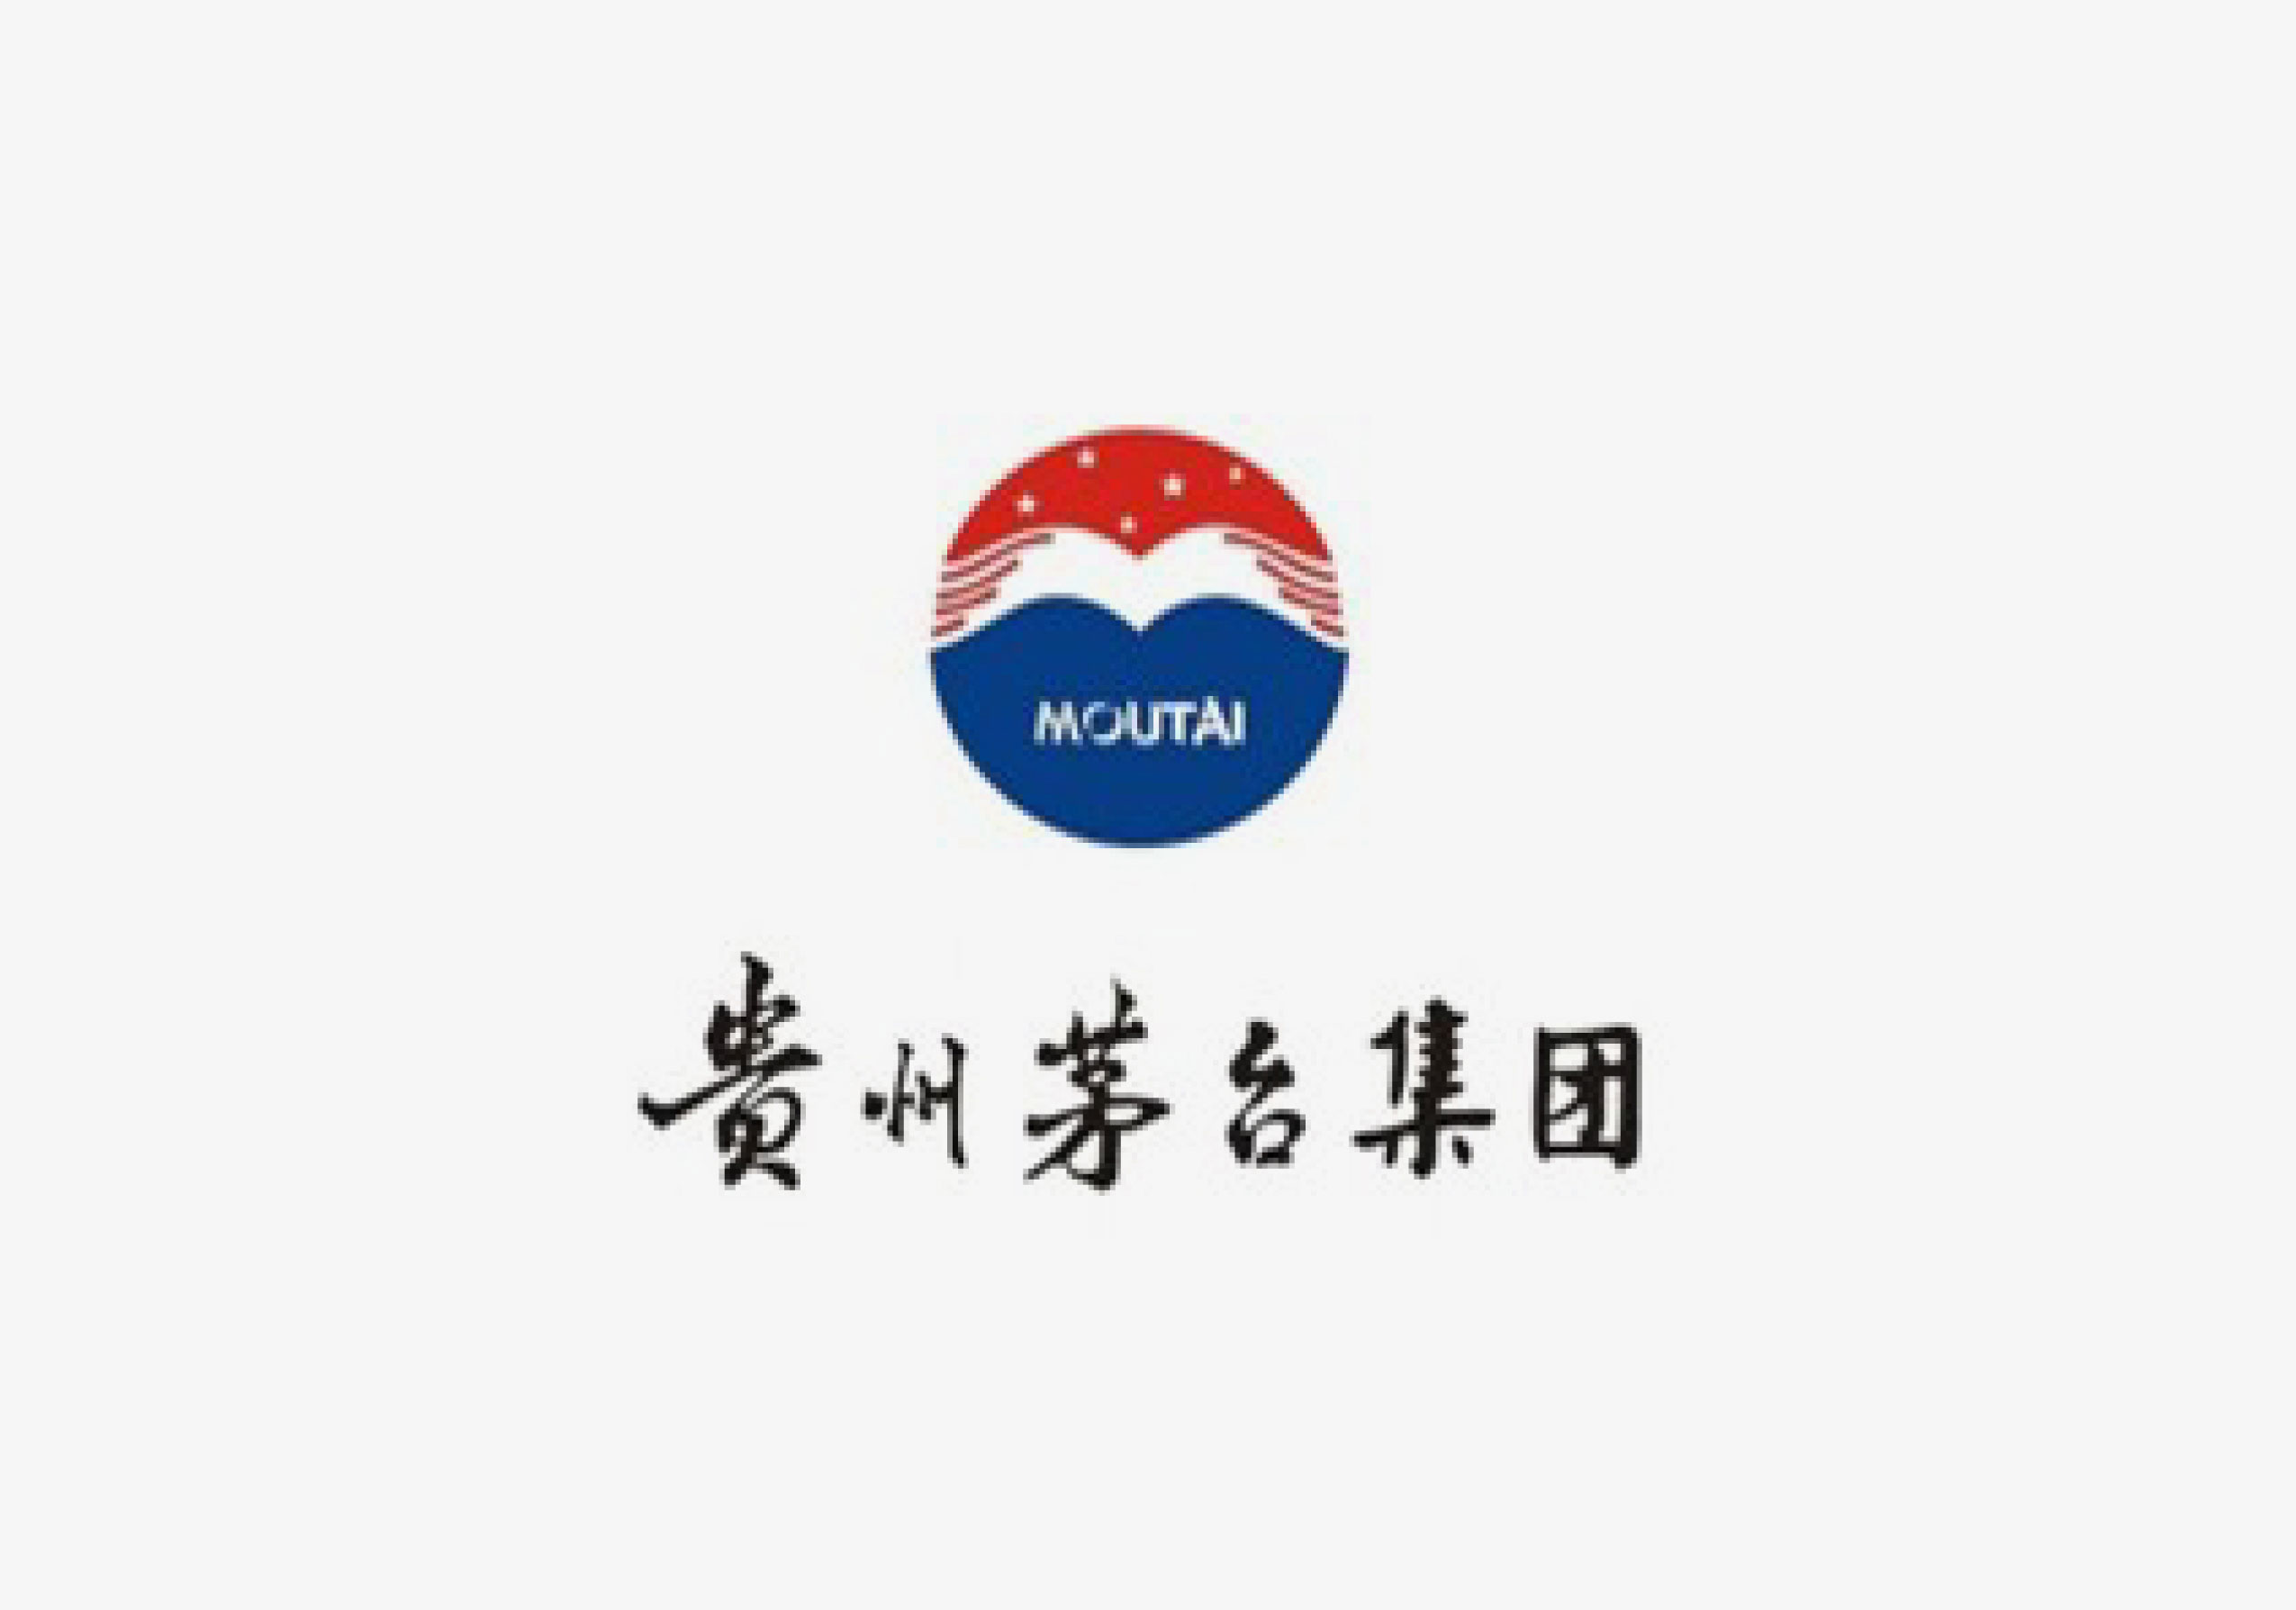 46茅台-2015_广告设计_公司logo设计_vi系统_北京